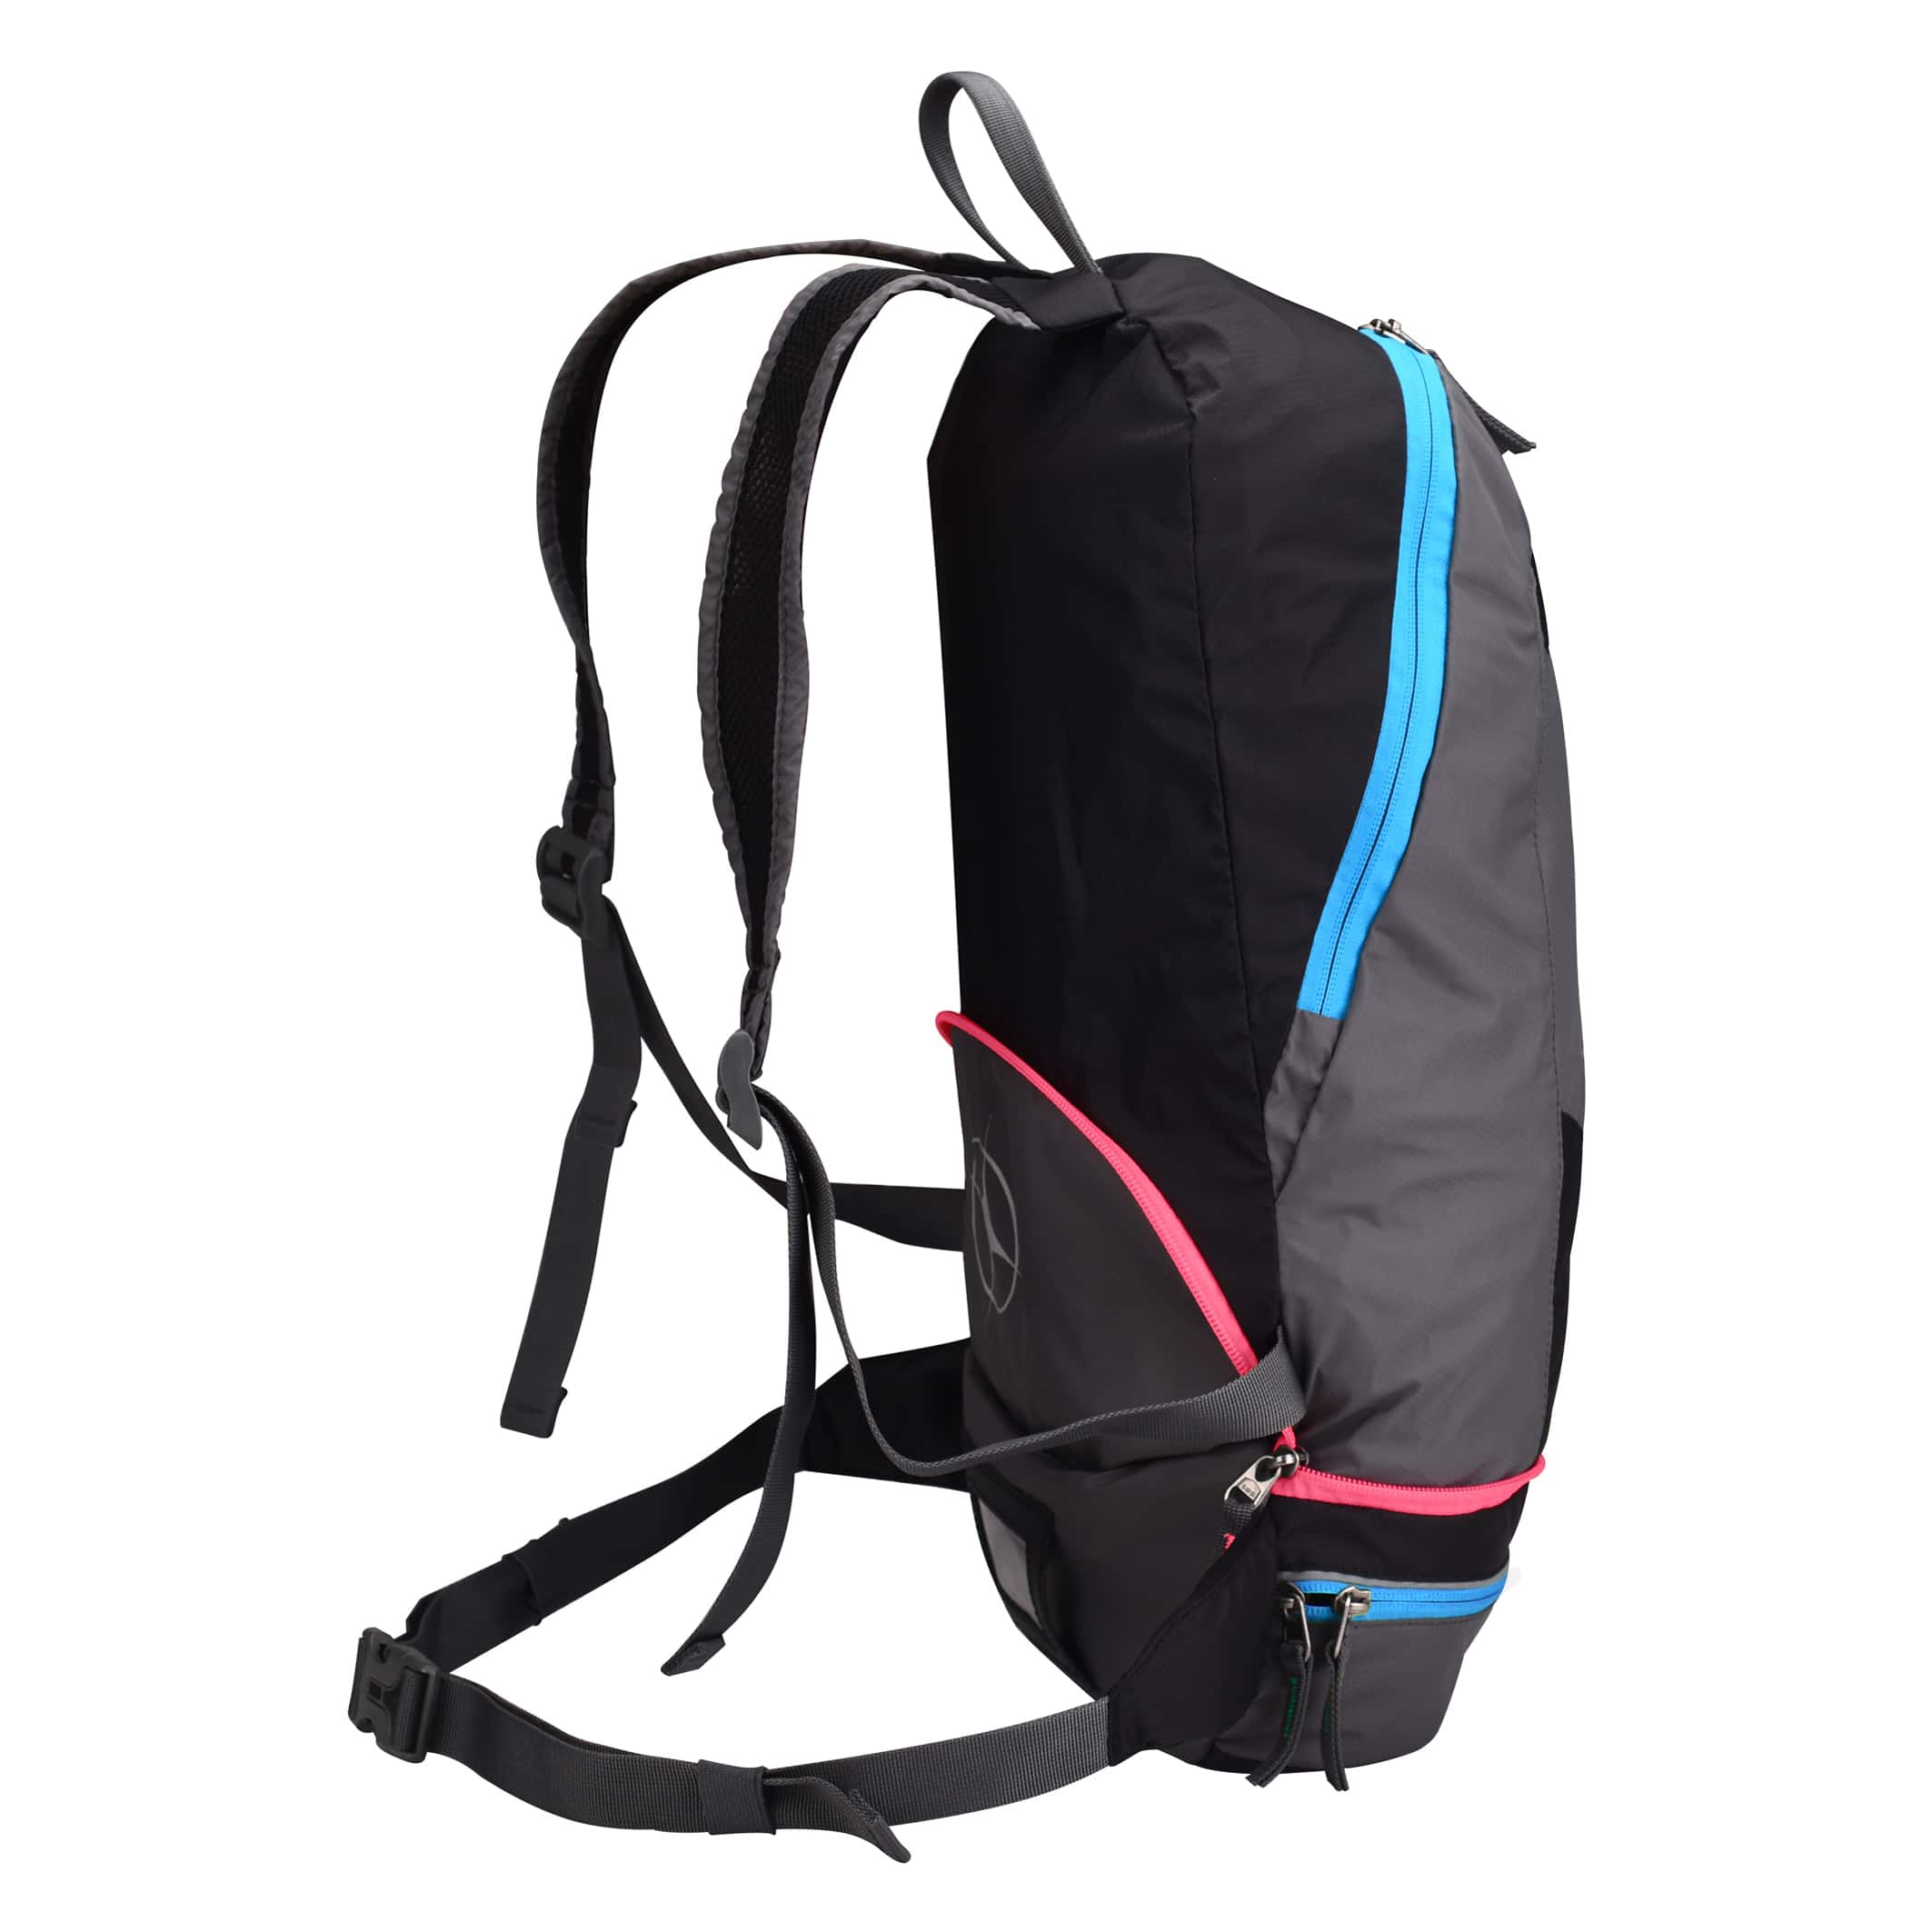 MB550-05-Backpack-2-in-1-Rock-Blue-Pink-Side-Straps